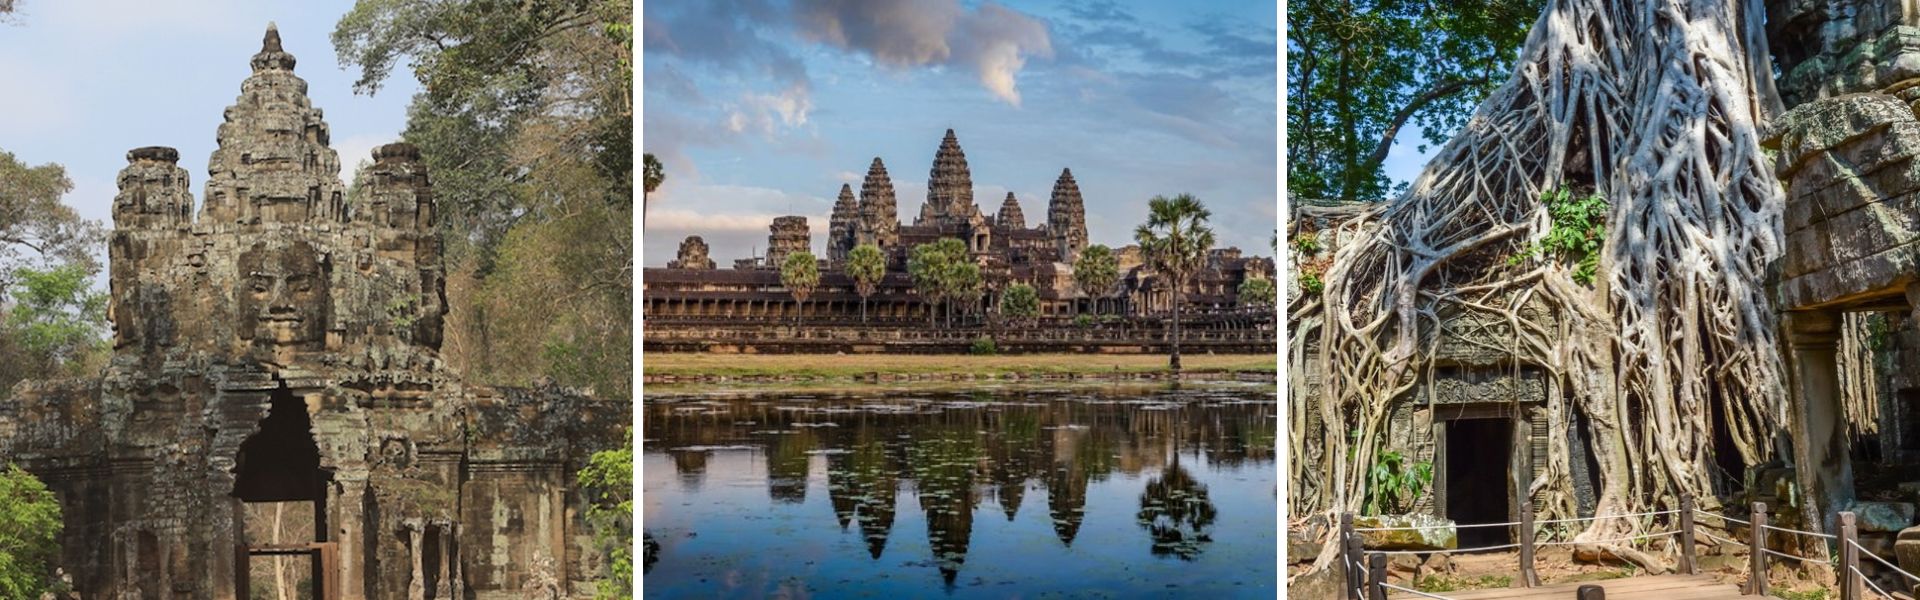 Dicas de viagem em Angkor no Camboja